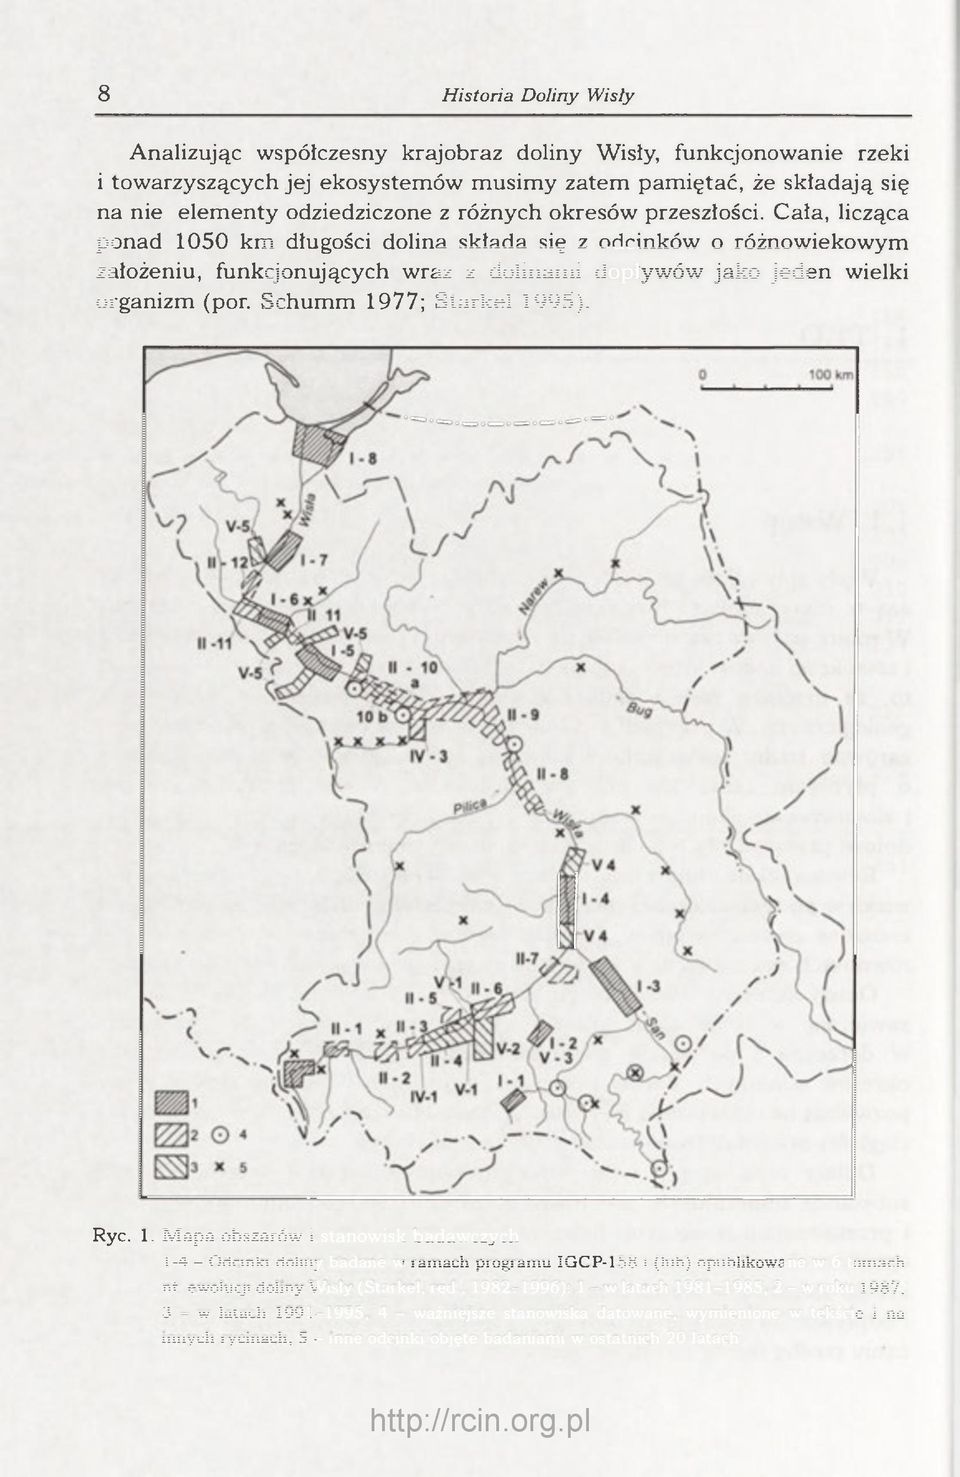 Schumm 1977; Starkel 1995). Ryc. 1. Mapa obszarów i stanowisk badawczych 1-4 - Odcinki doliny badane w ramach programu IGCP-158 i (lub) opublikowane w 6 tomach nt. ewolucji doliny Wisły (Starkel, red.